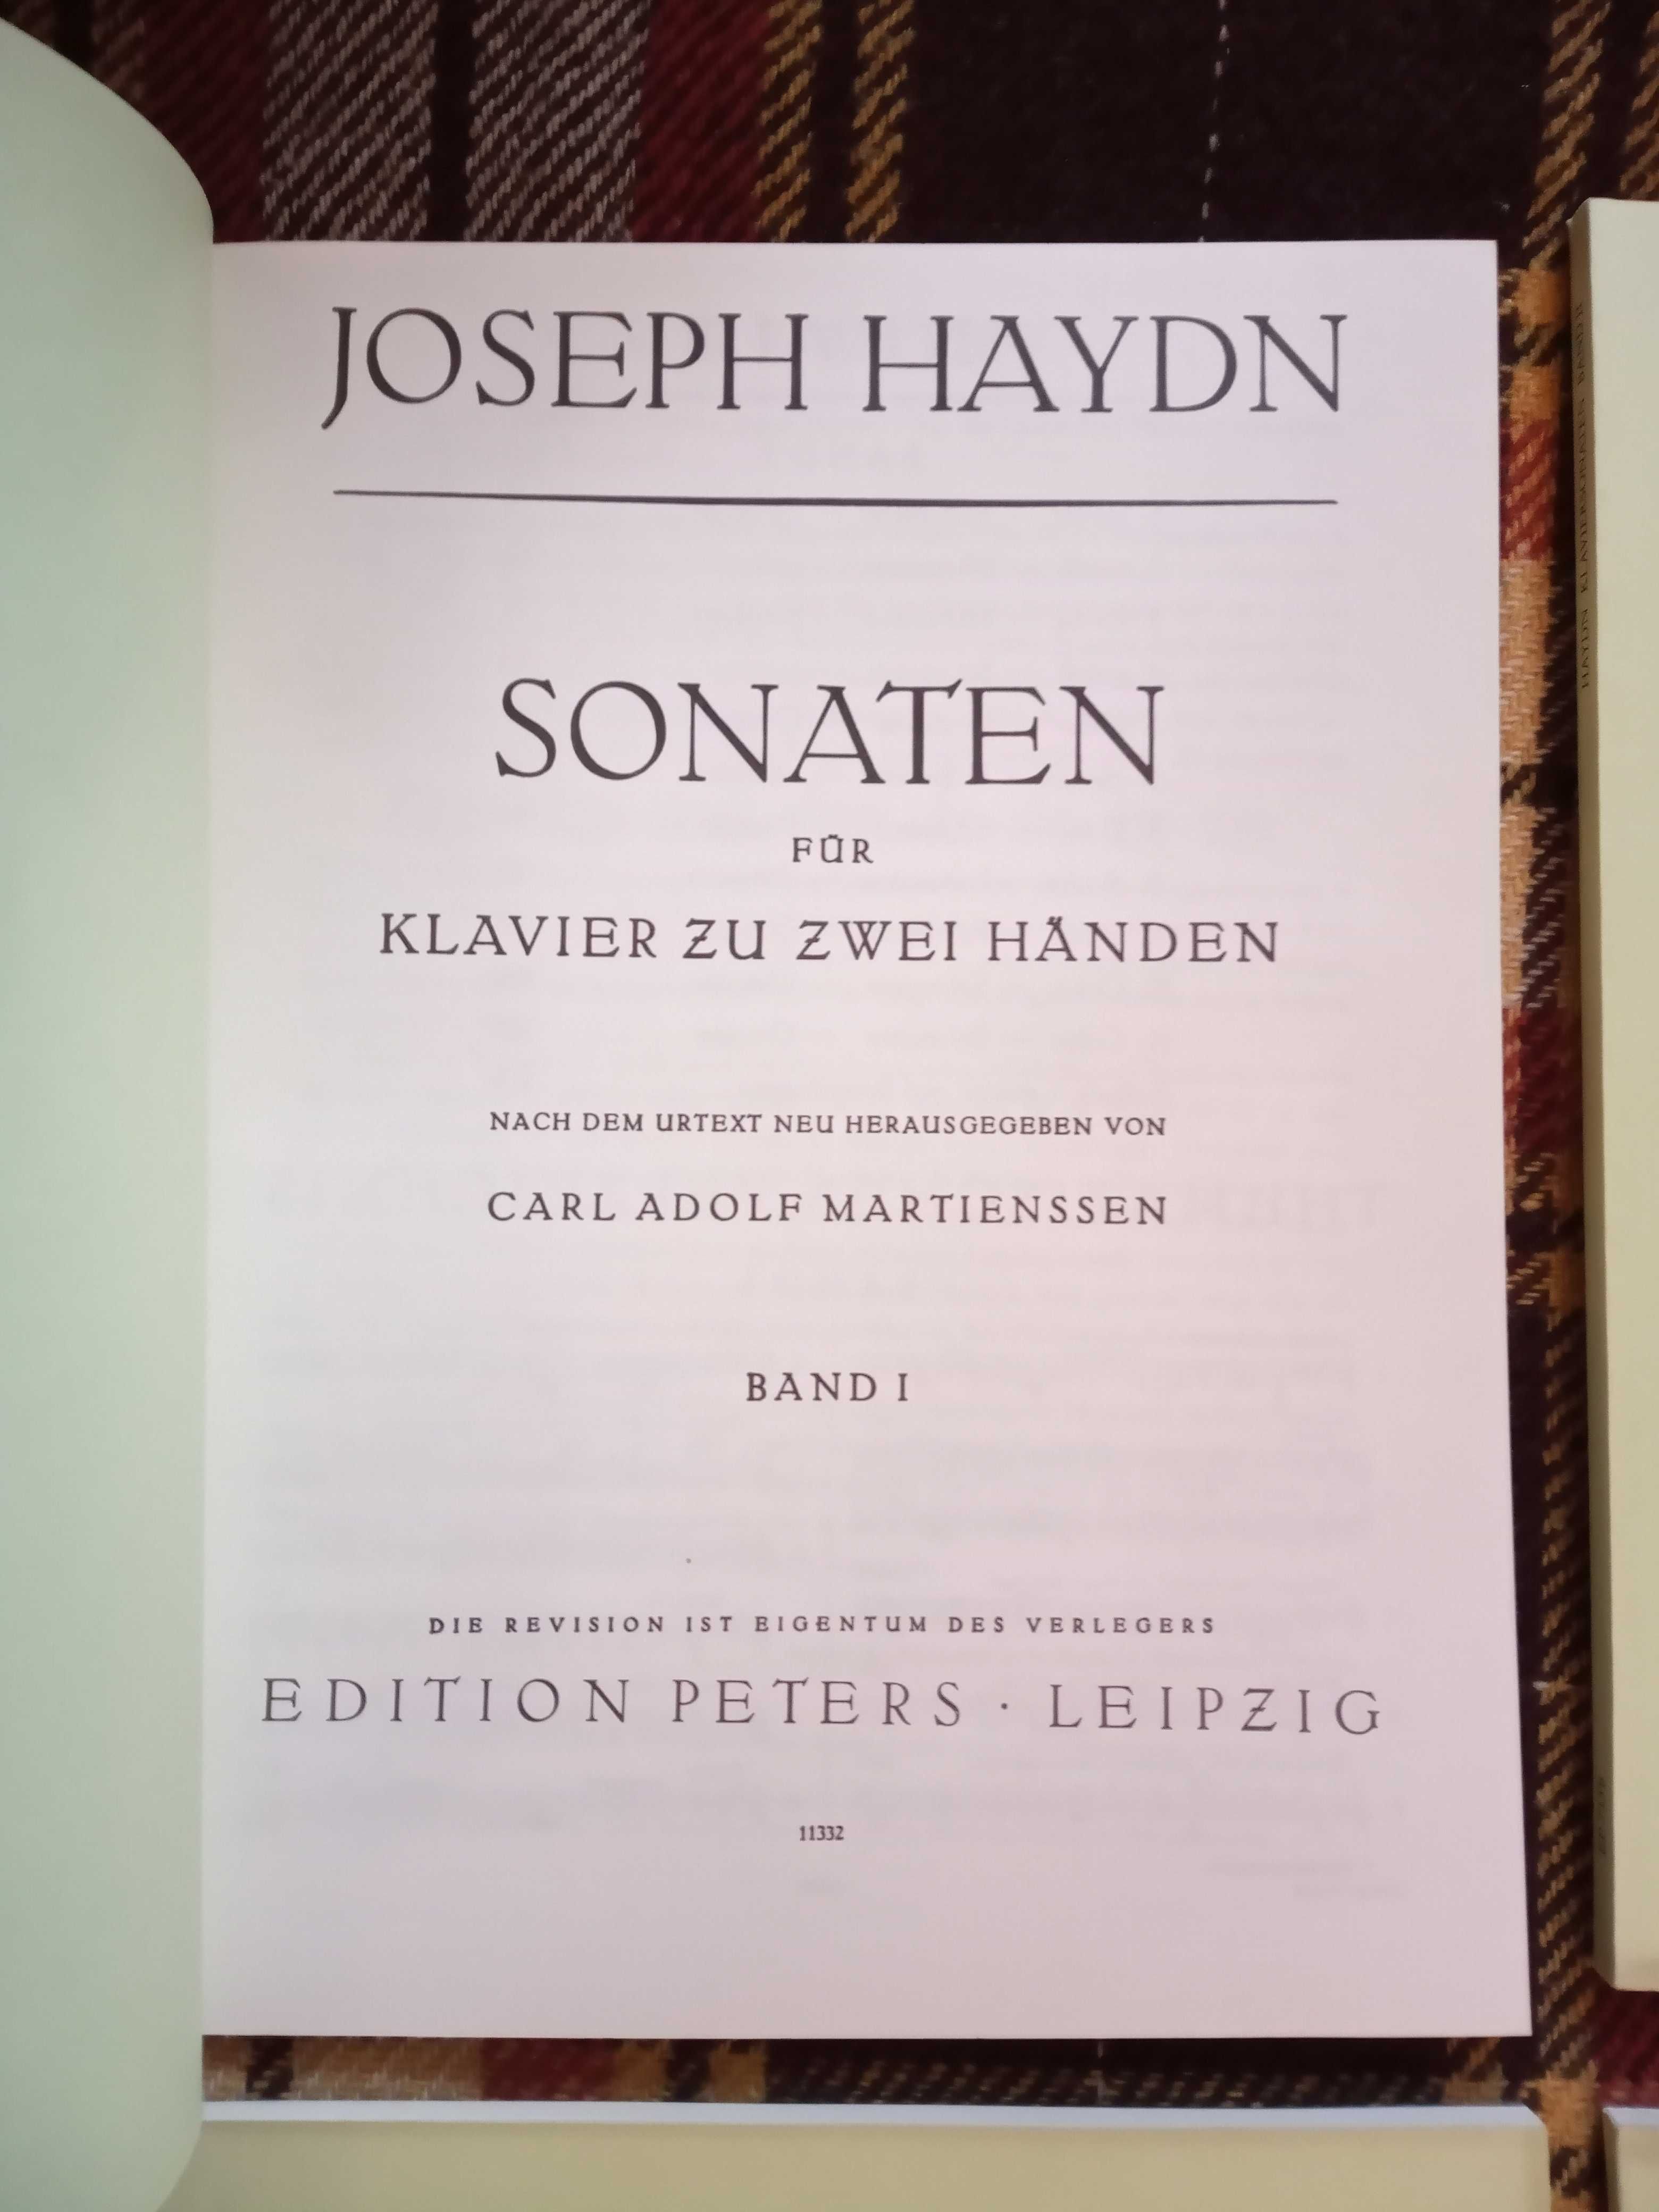 Haydn Sonaty cz 1-4 wyd Peters